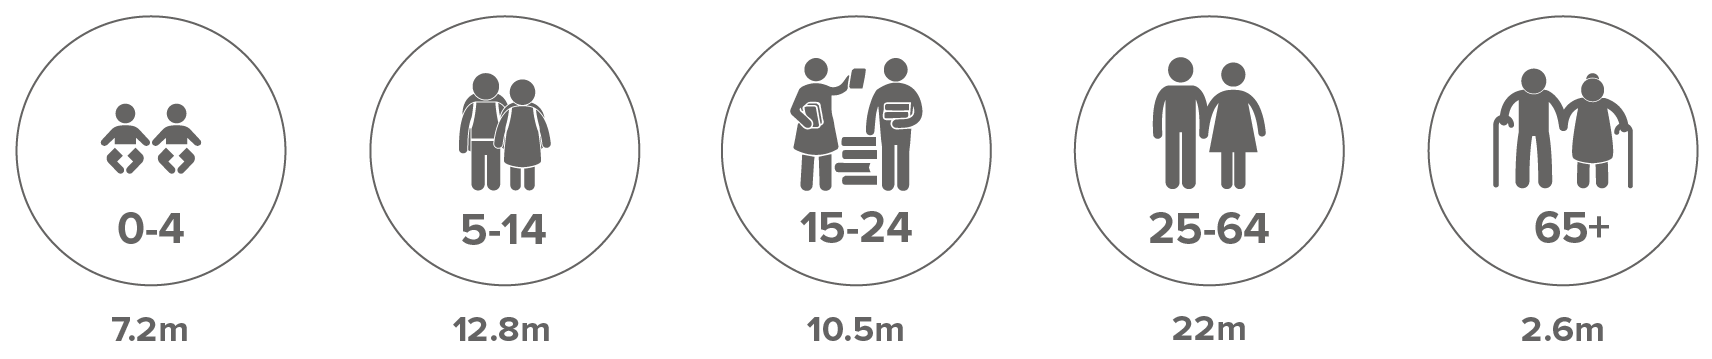 Estimation du nombre de personnes de différents groupes d'âge vivant dans des situations de déplacement interne en raison de conflits, de violences et de catastrophes dans le monde à la fin de 2020